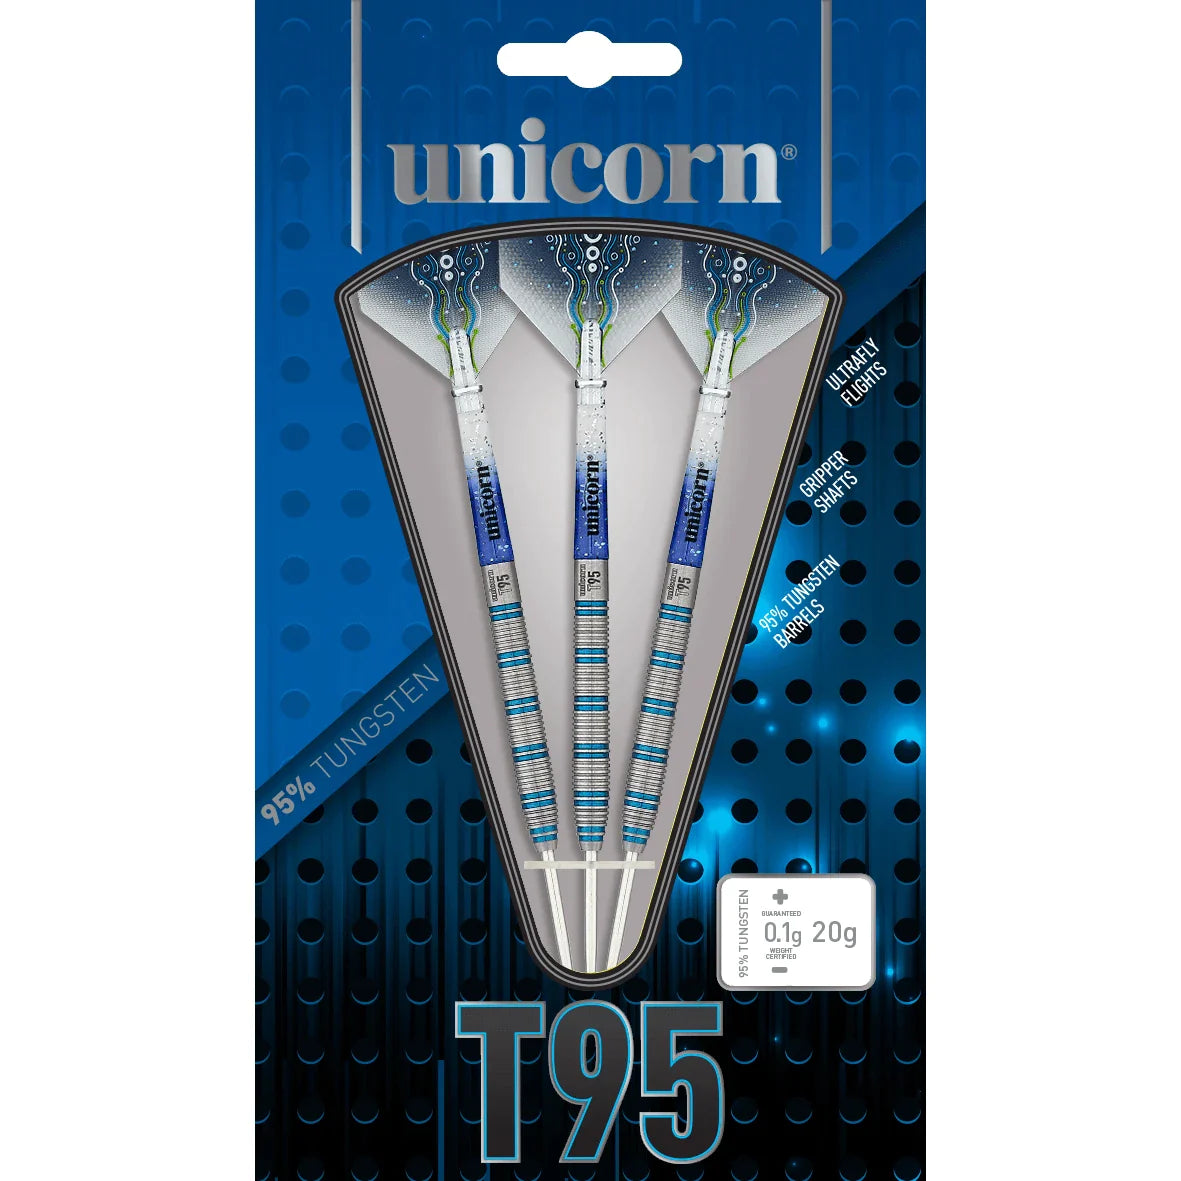 Unicorn T95 Core XL Blue 21g Darts